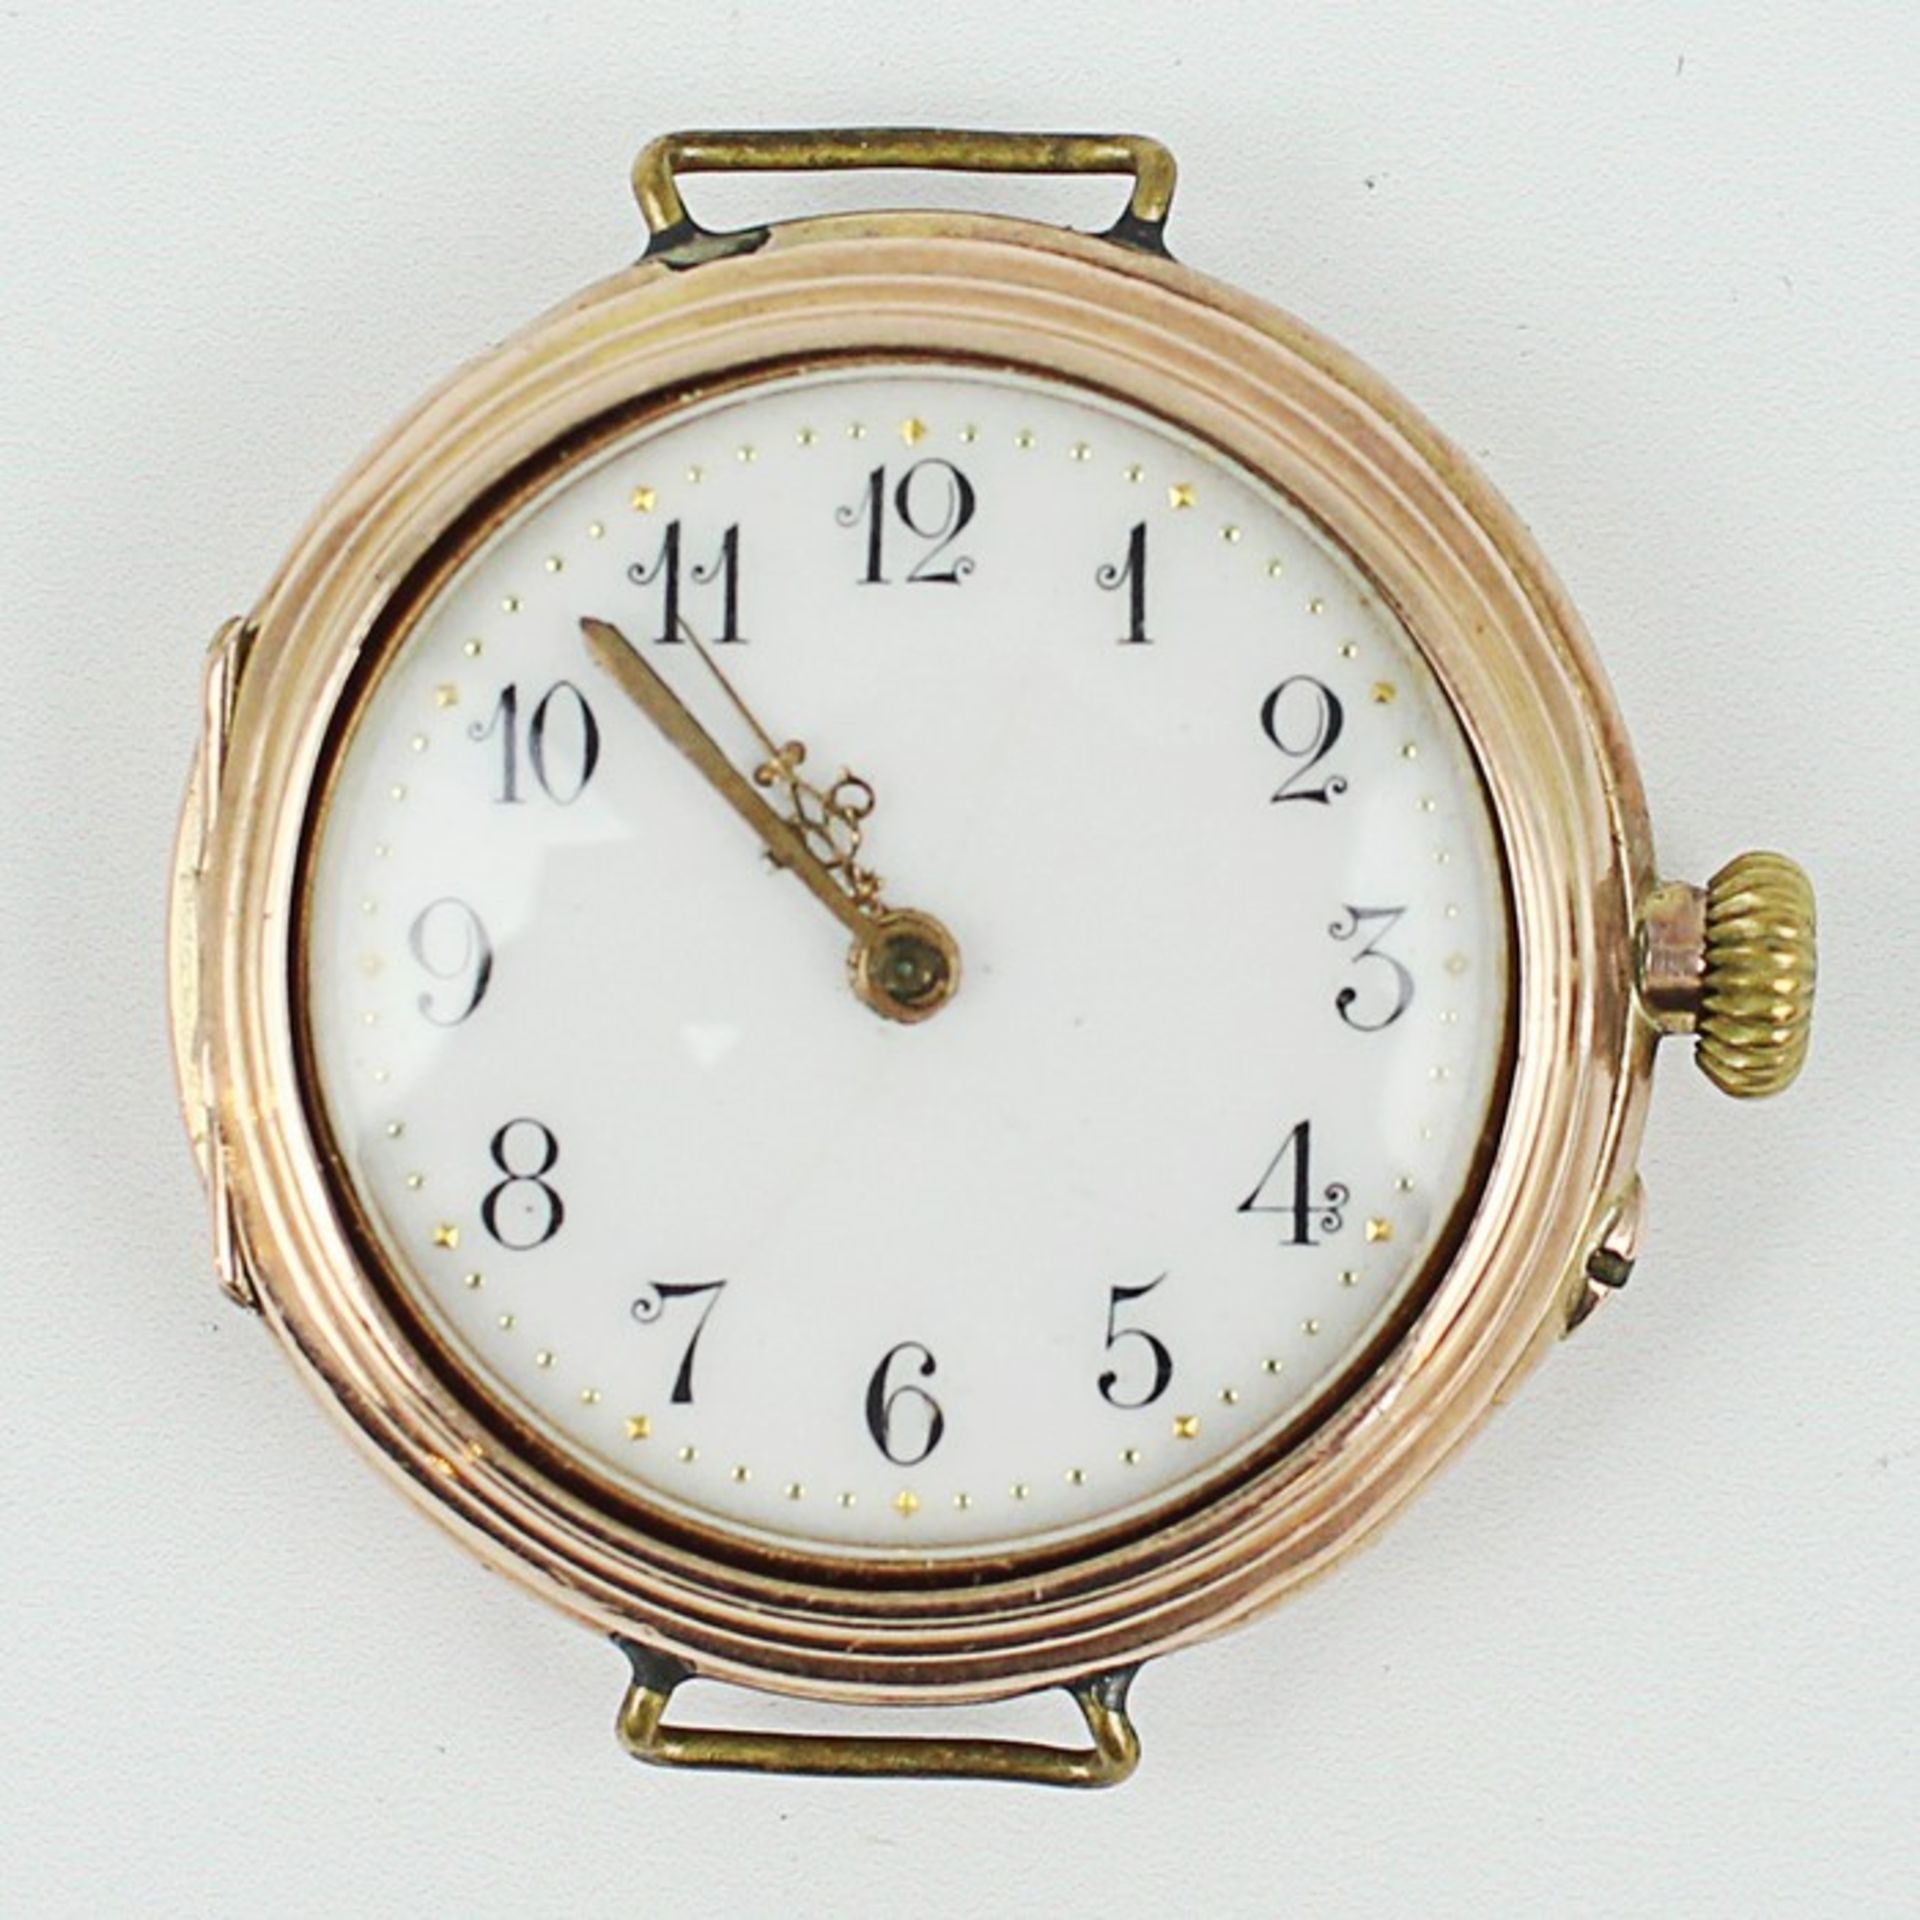 DamenarmbanduhrRG 585, urspr. wohl Lepine-Taschenuhr mit nachträglich angebrachten Ösen, rundes